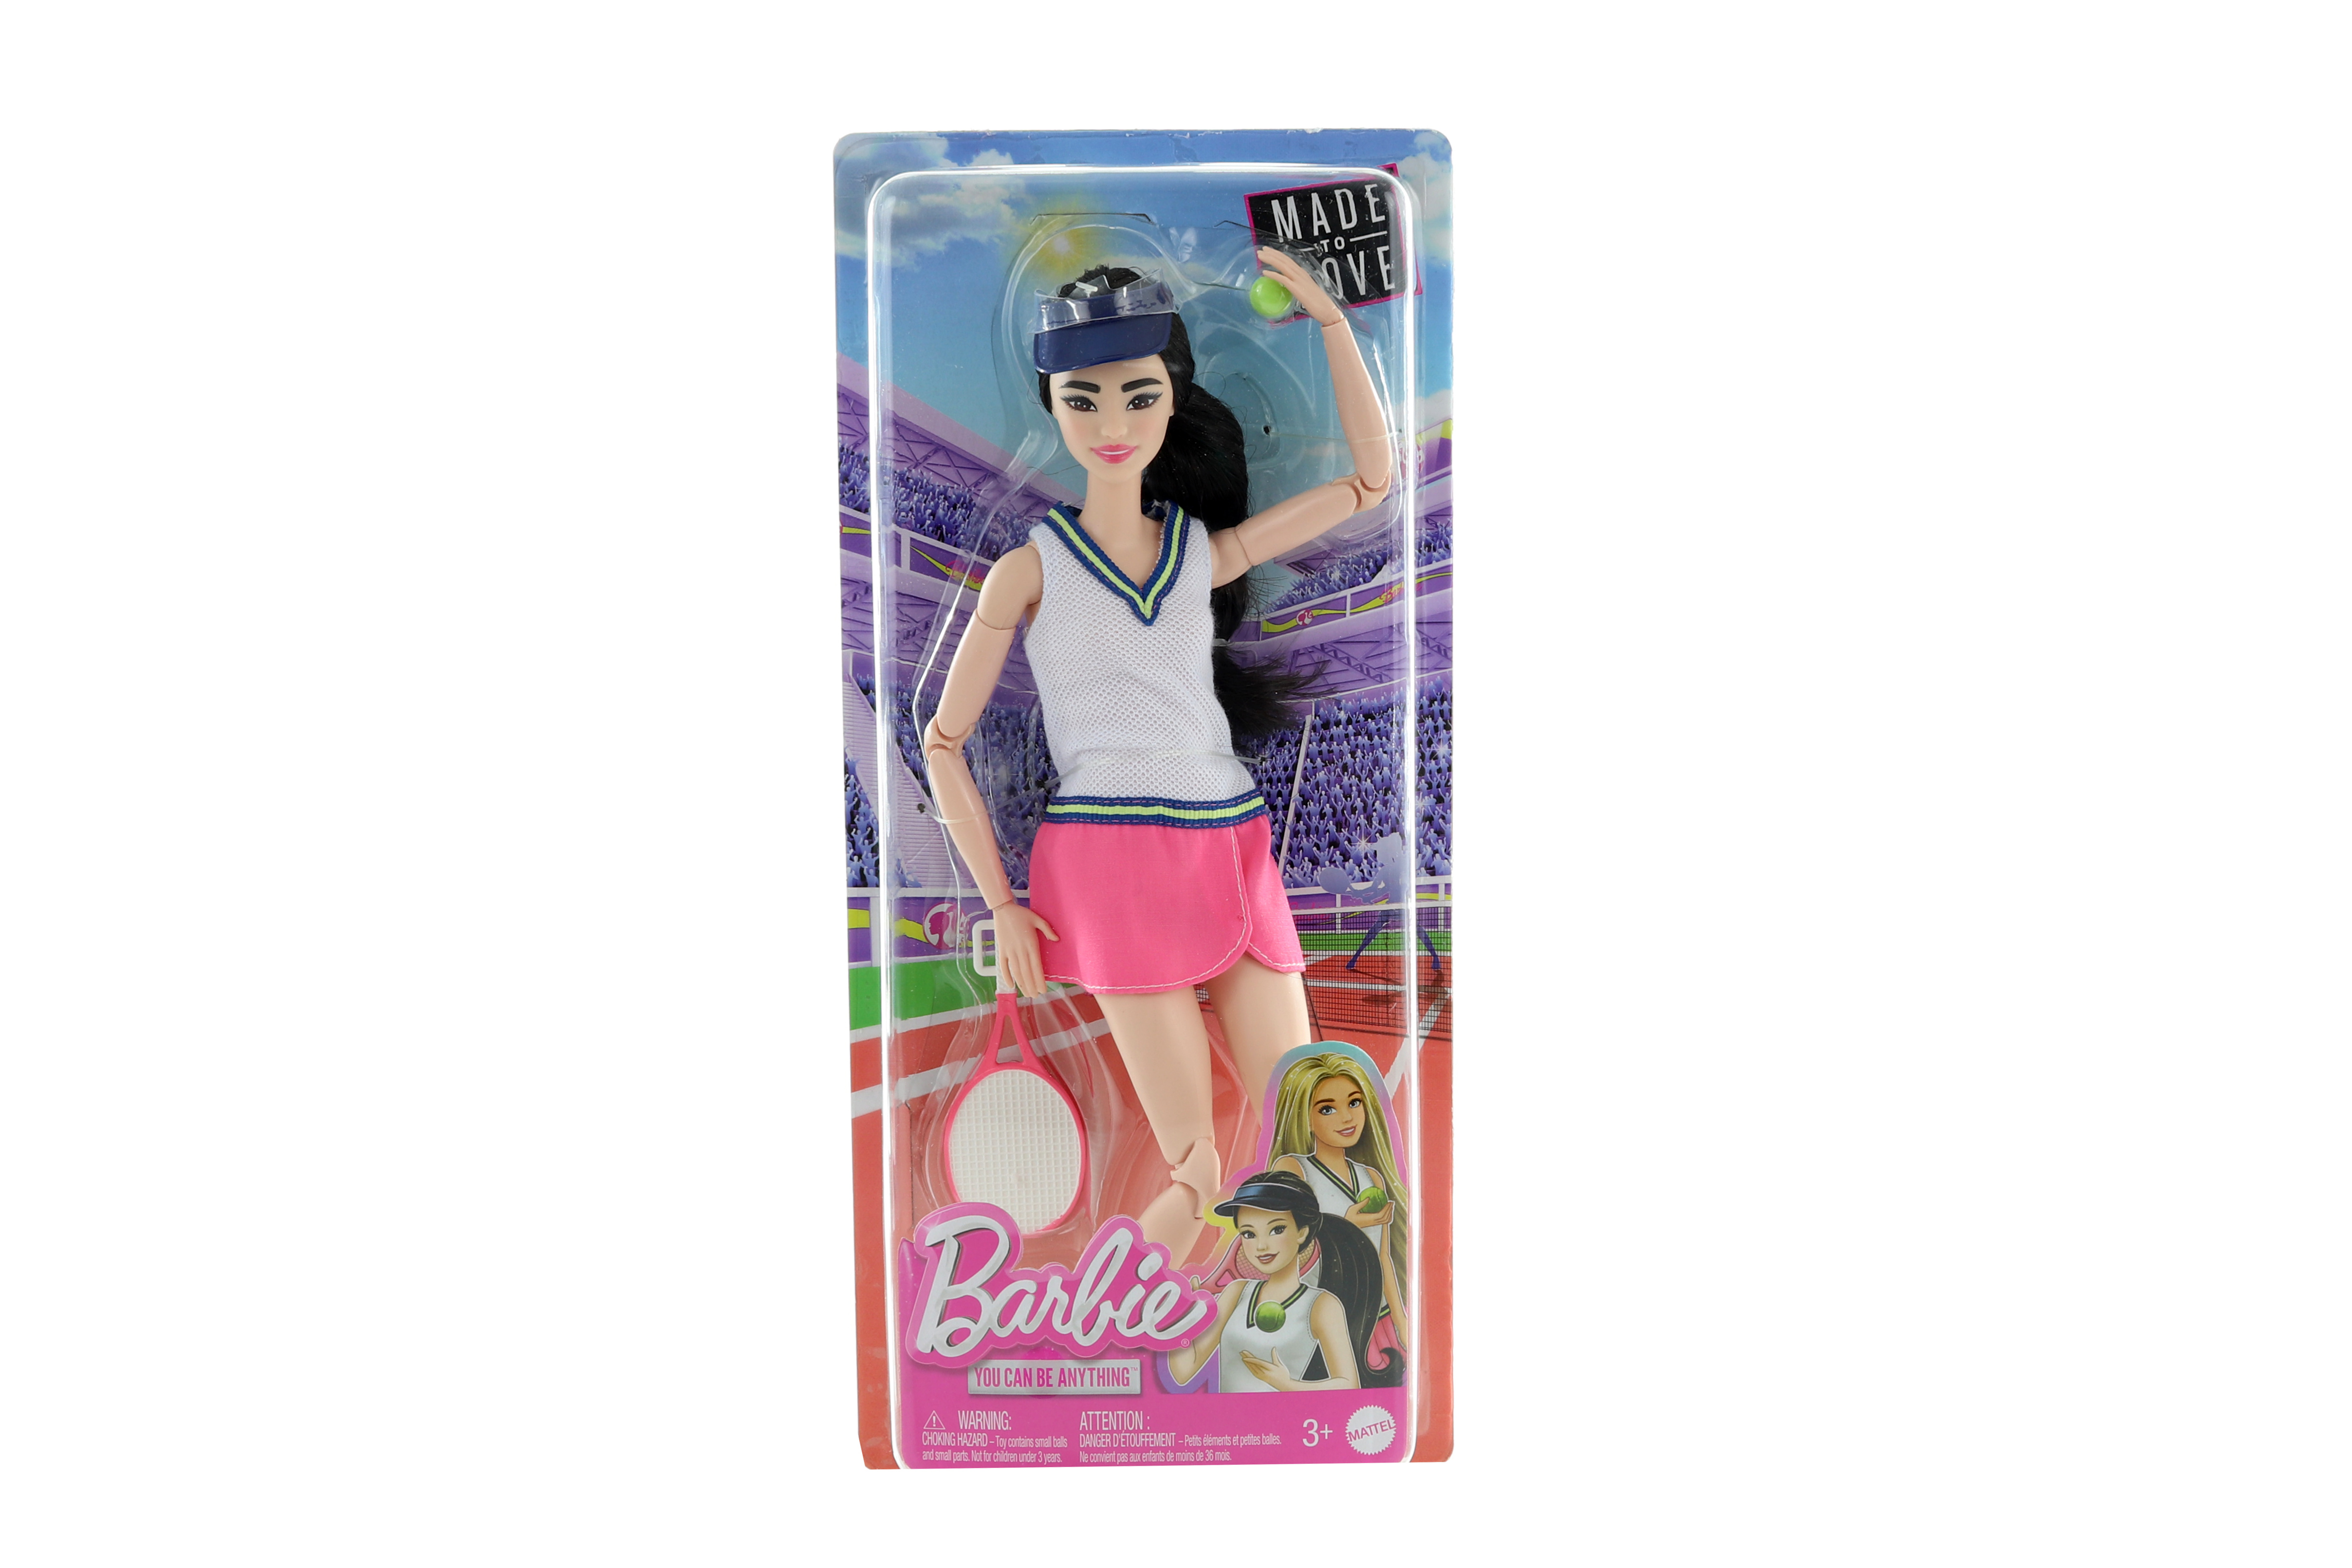 Barbie Sportovkyně - tenistka